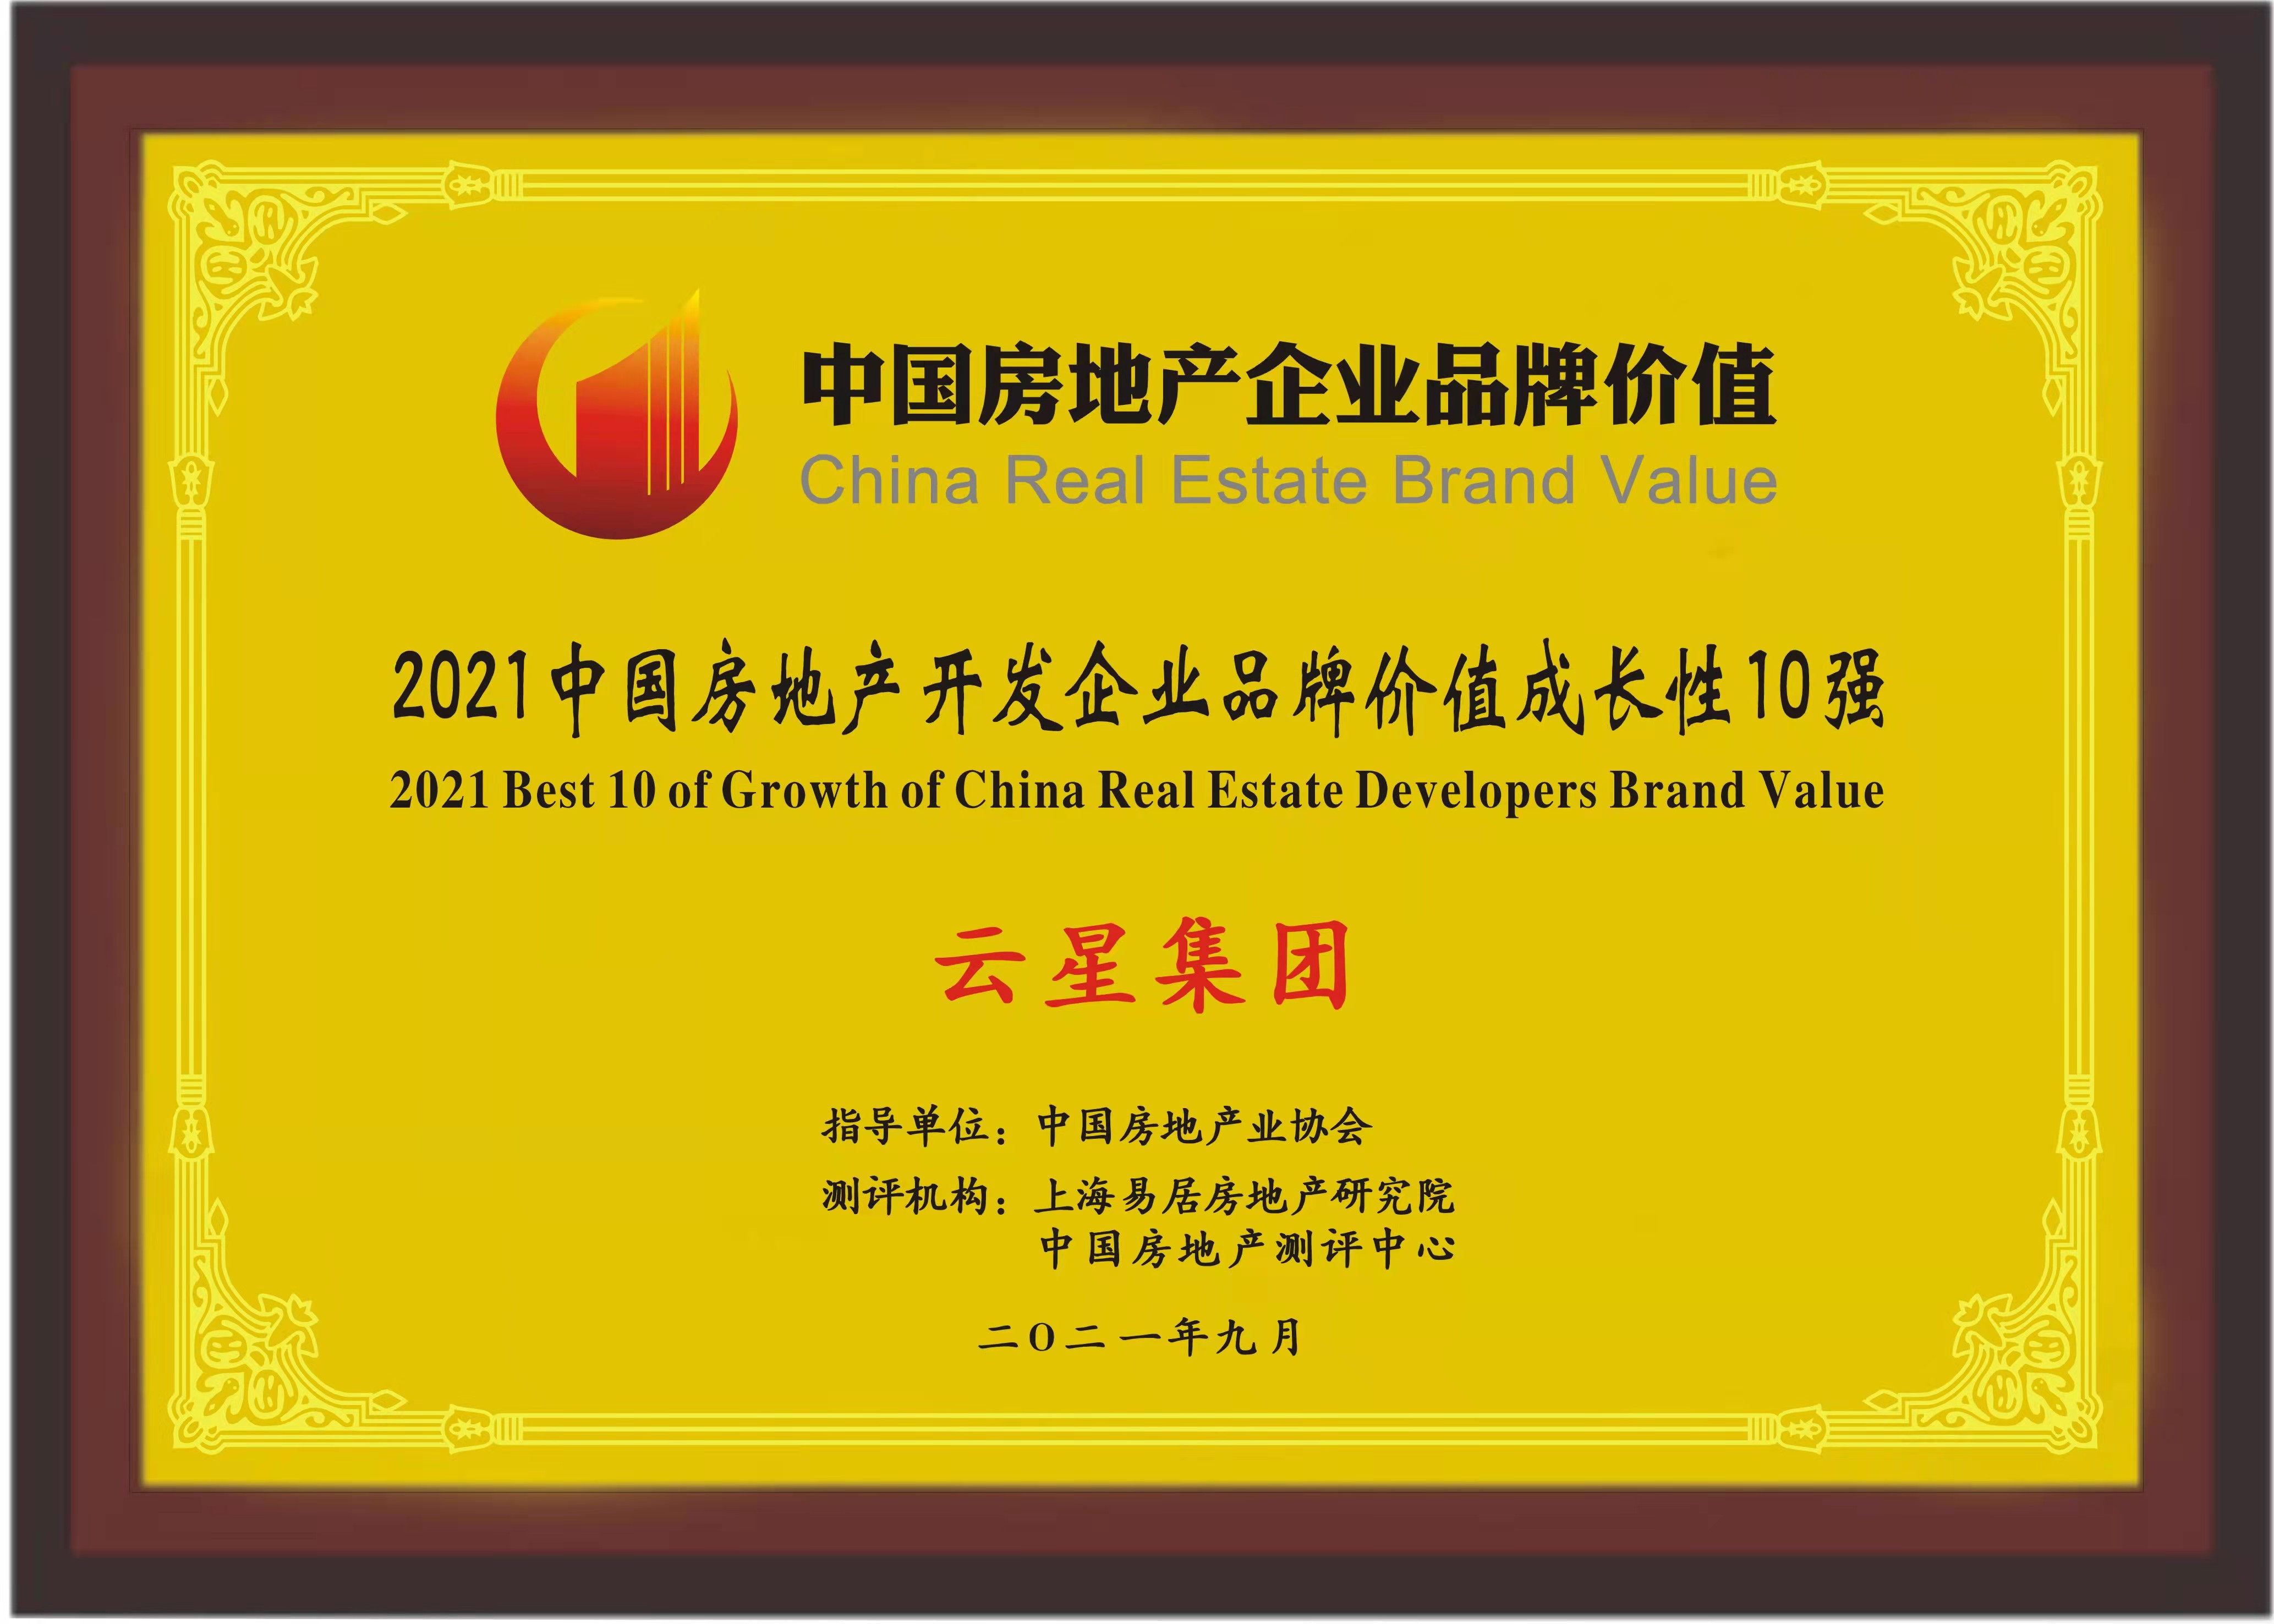 2021中国房地产开发企业品牌价值西南10强